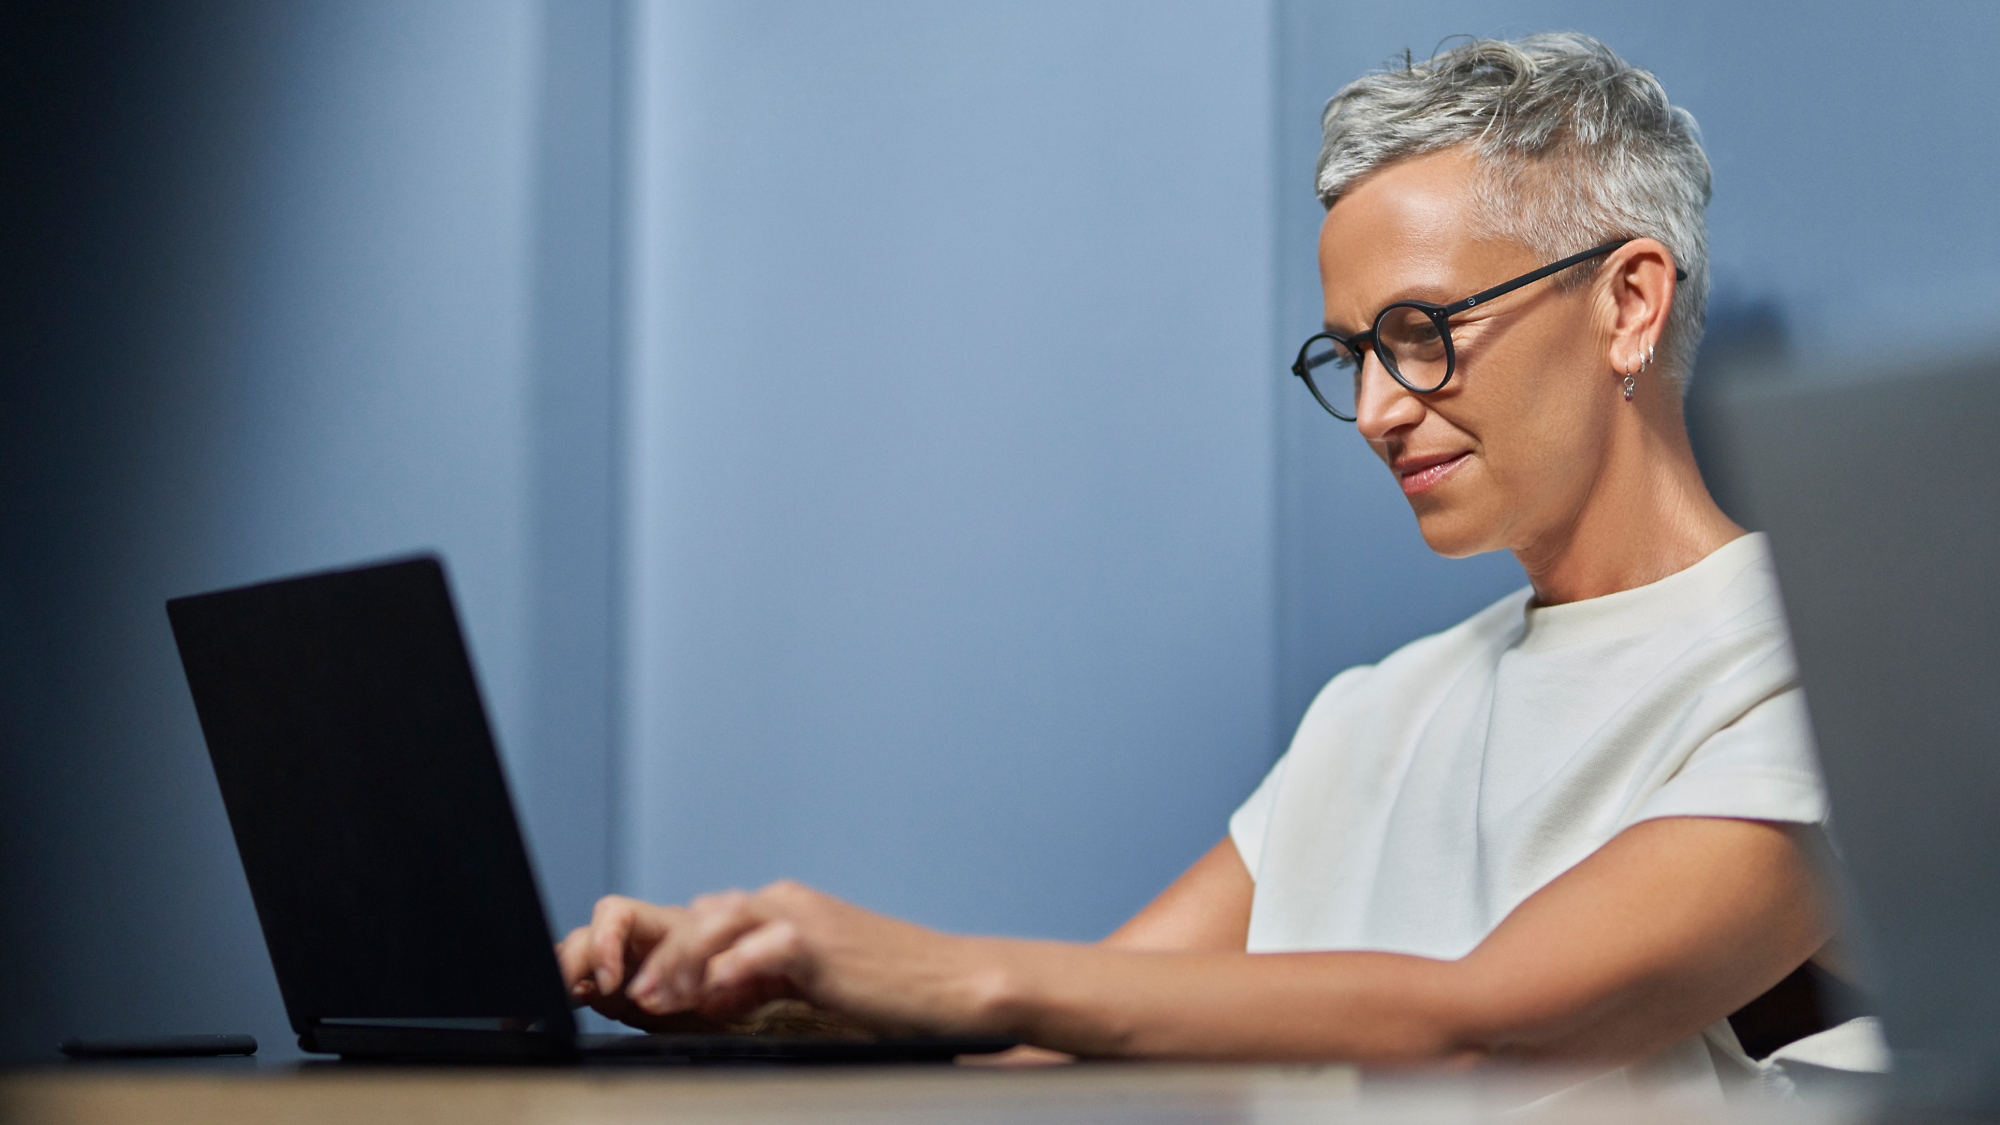 Een glimlachende oudere vrouw met kort grijs haar werkt op een laptop in een modern kantoor.